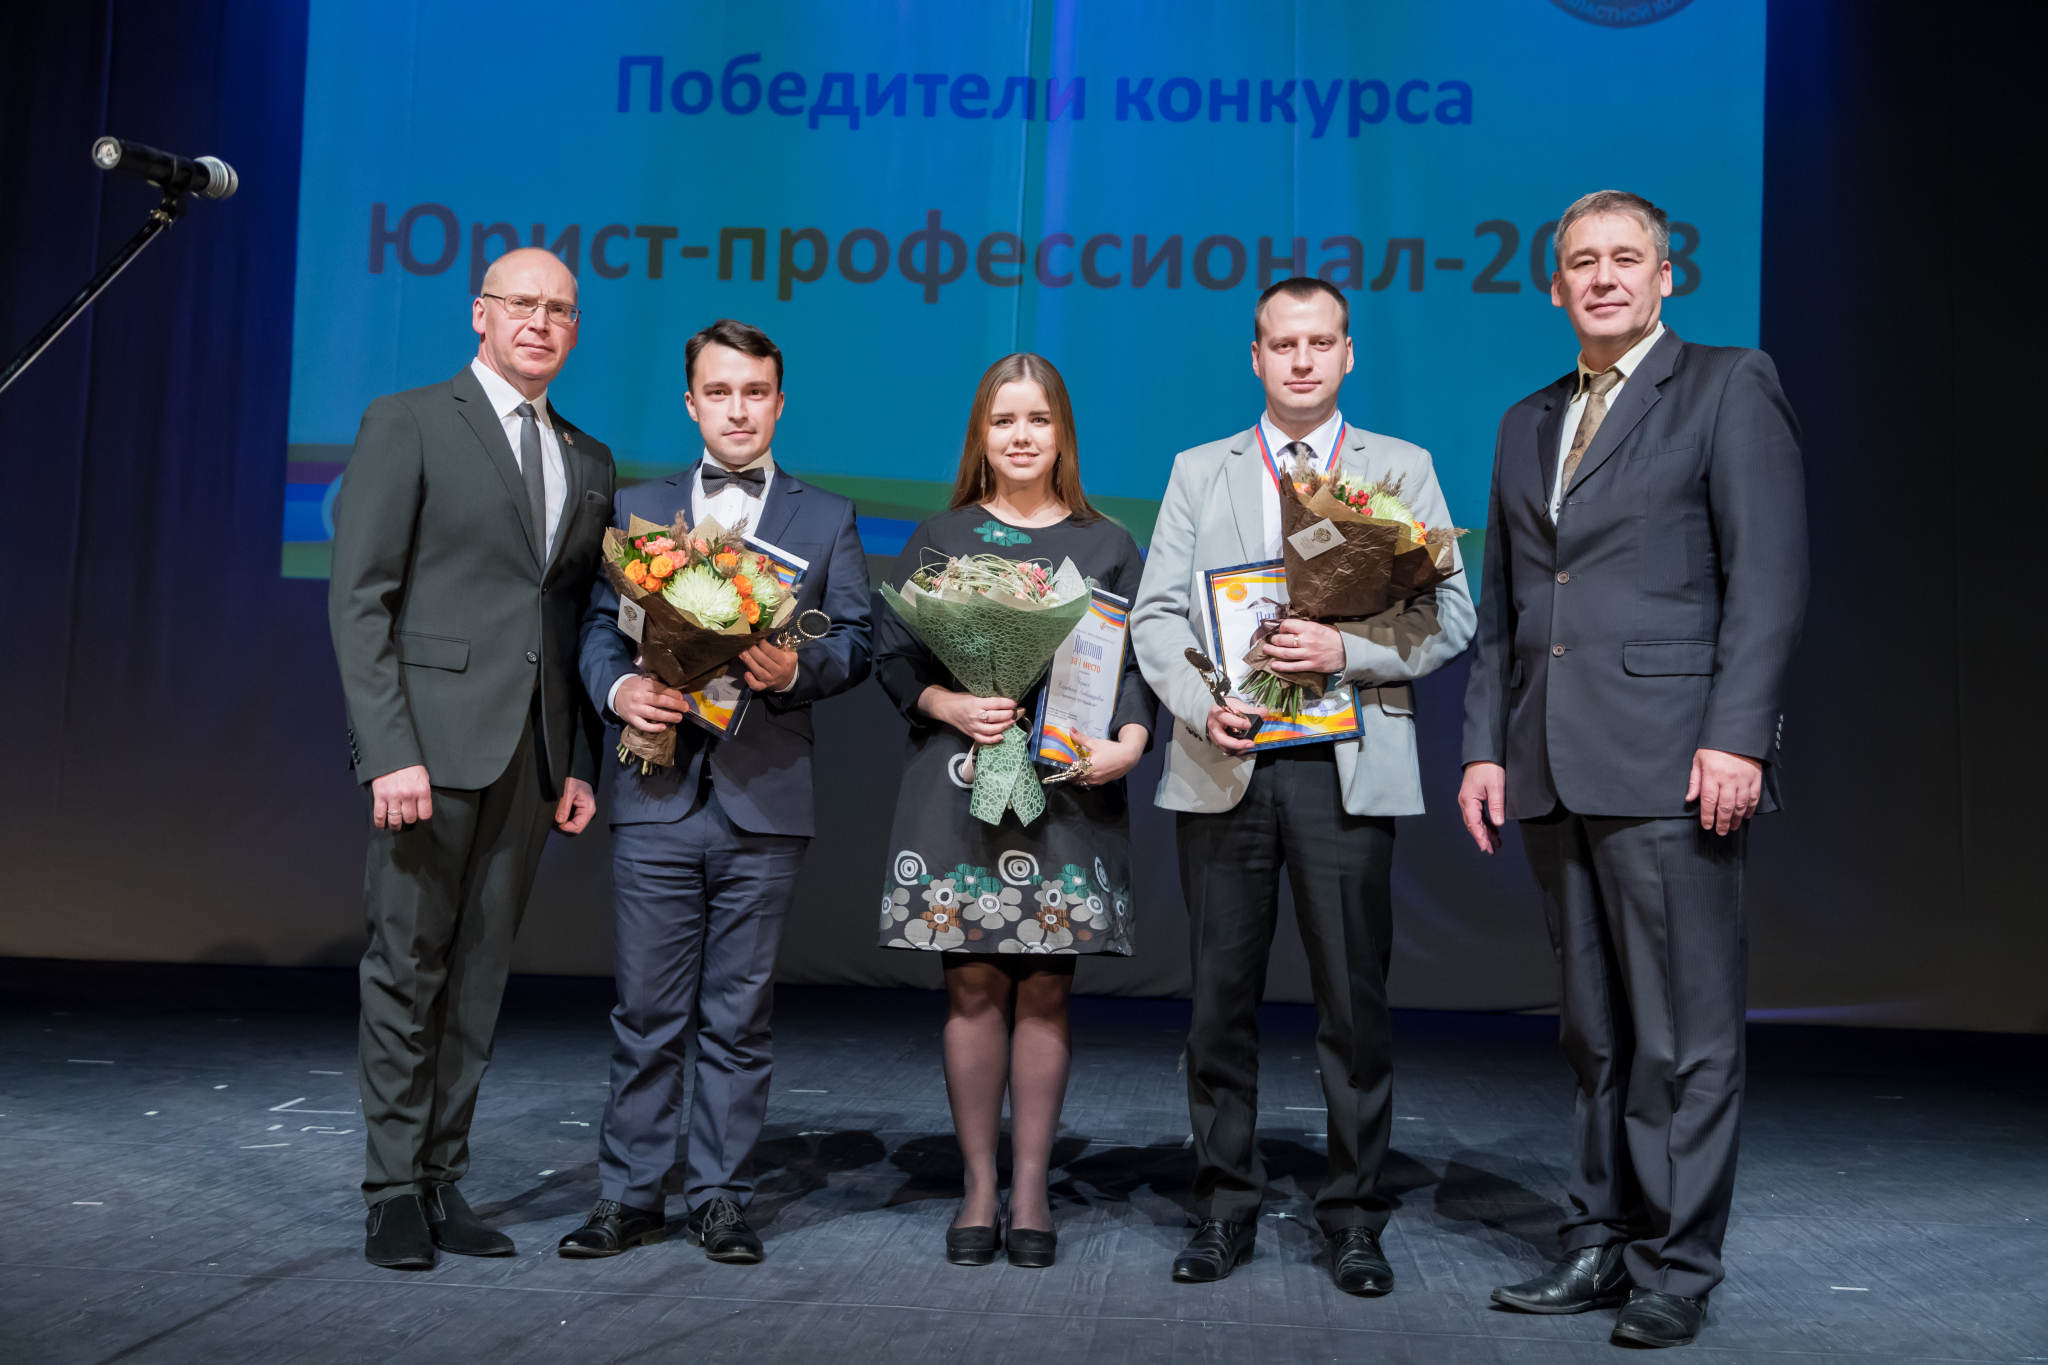 В преддверии профессионального праздника были названы лучшие юристы Кировской области